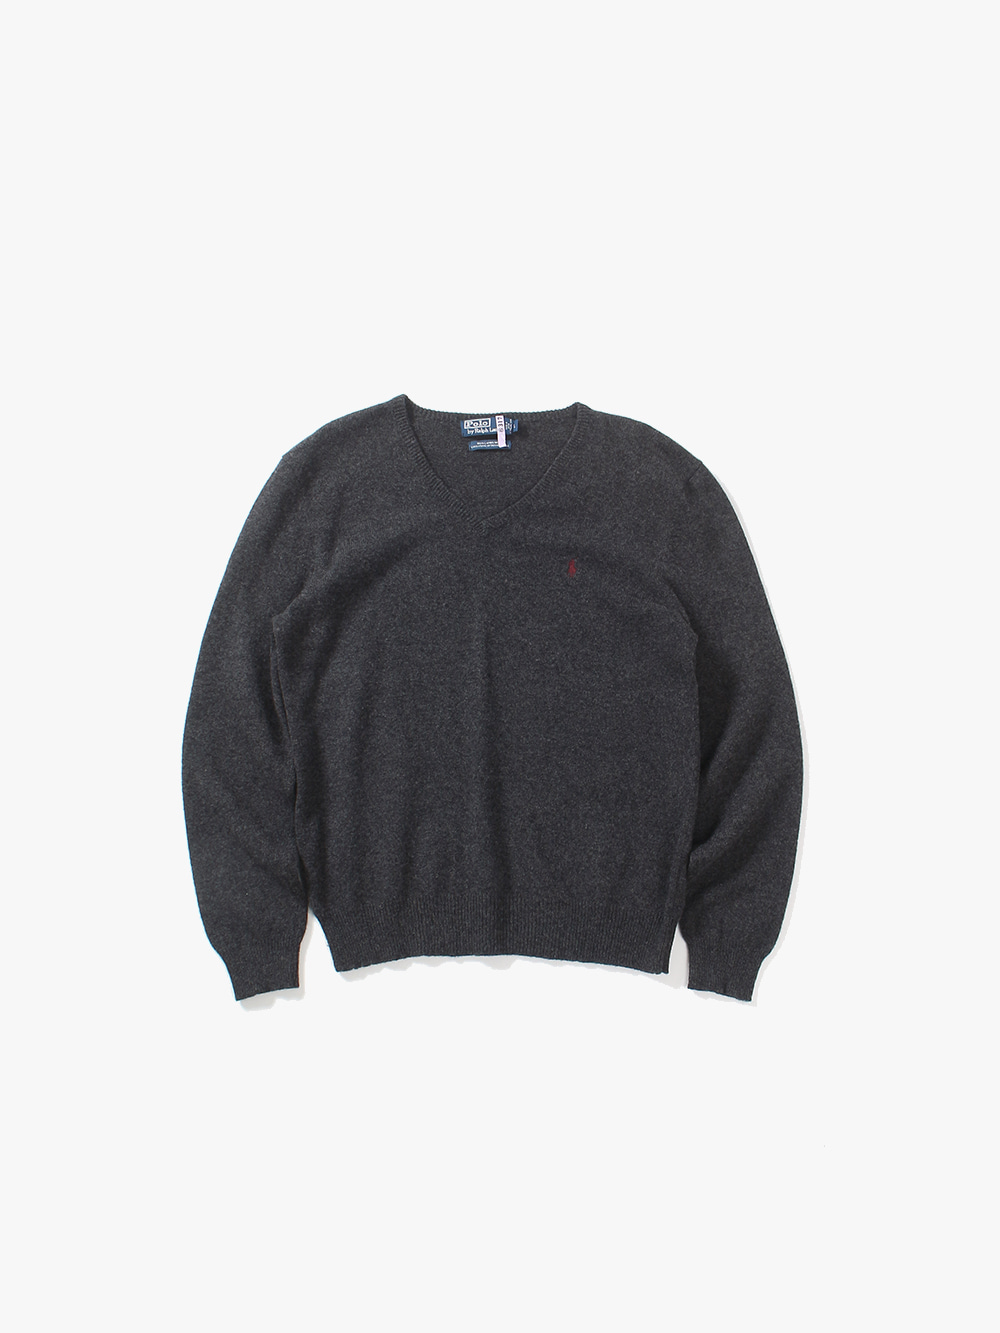 [ L ] Polo Ralph Lauren Sweater (6266)